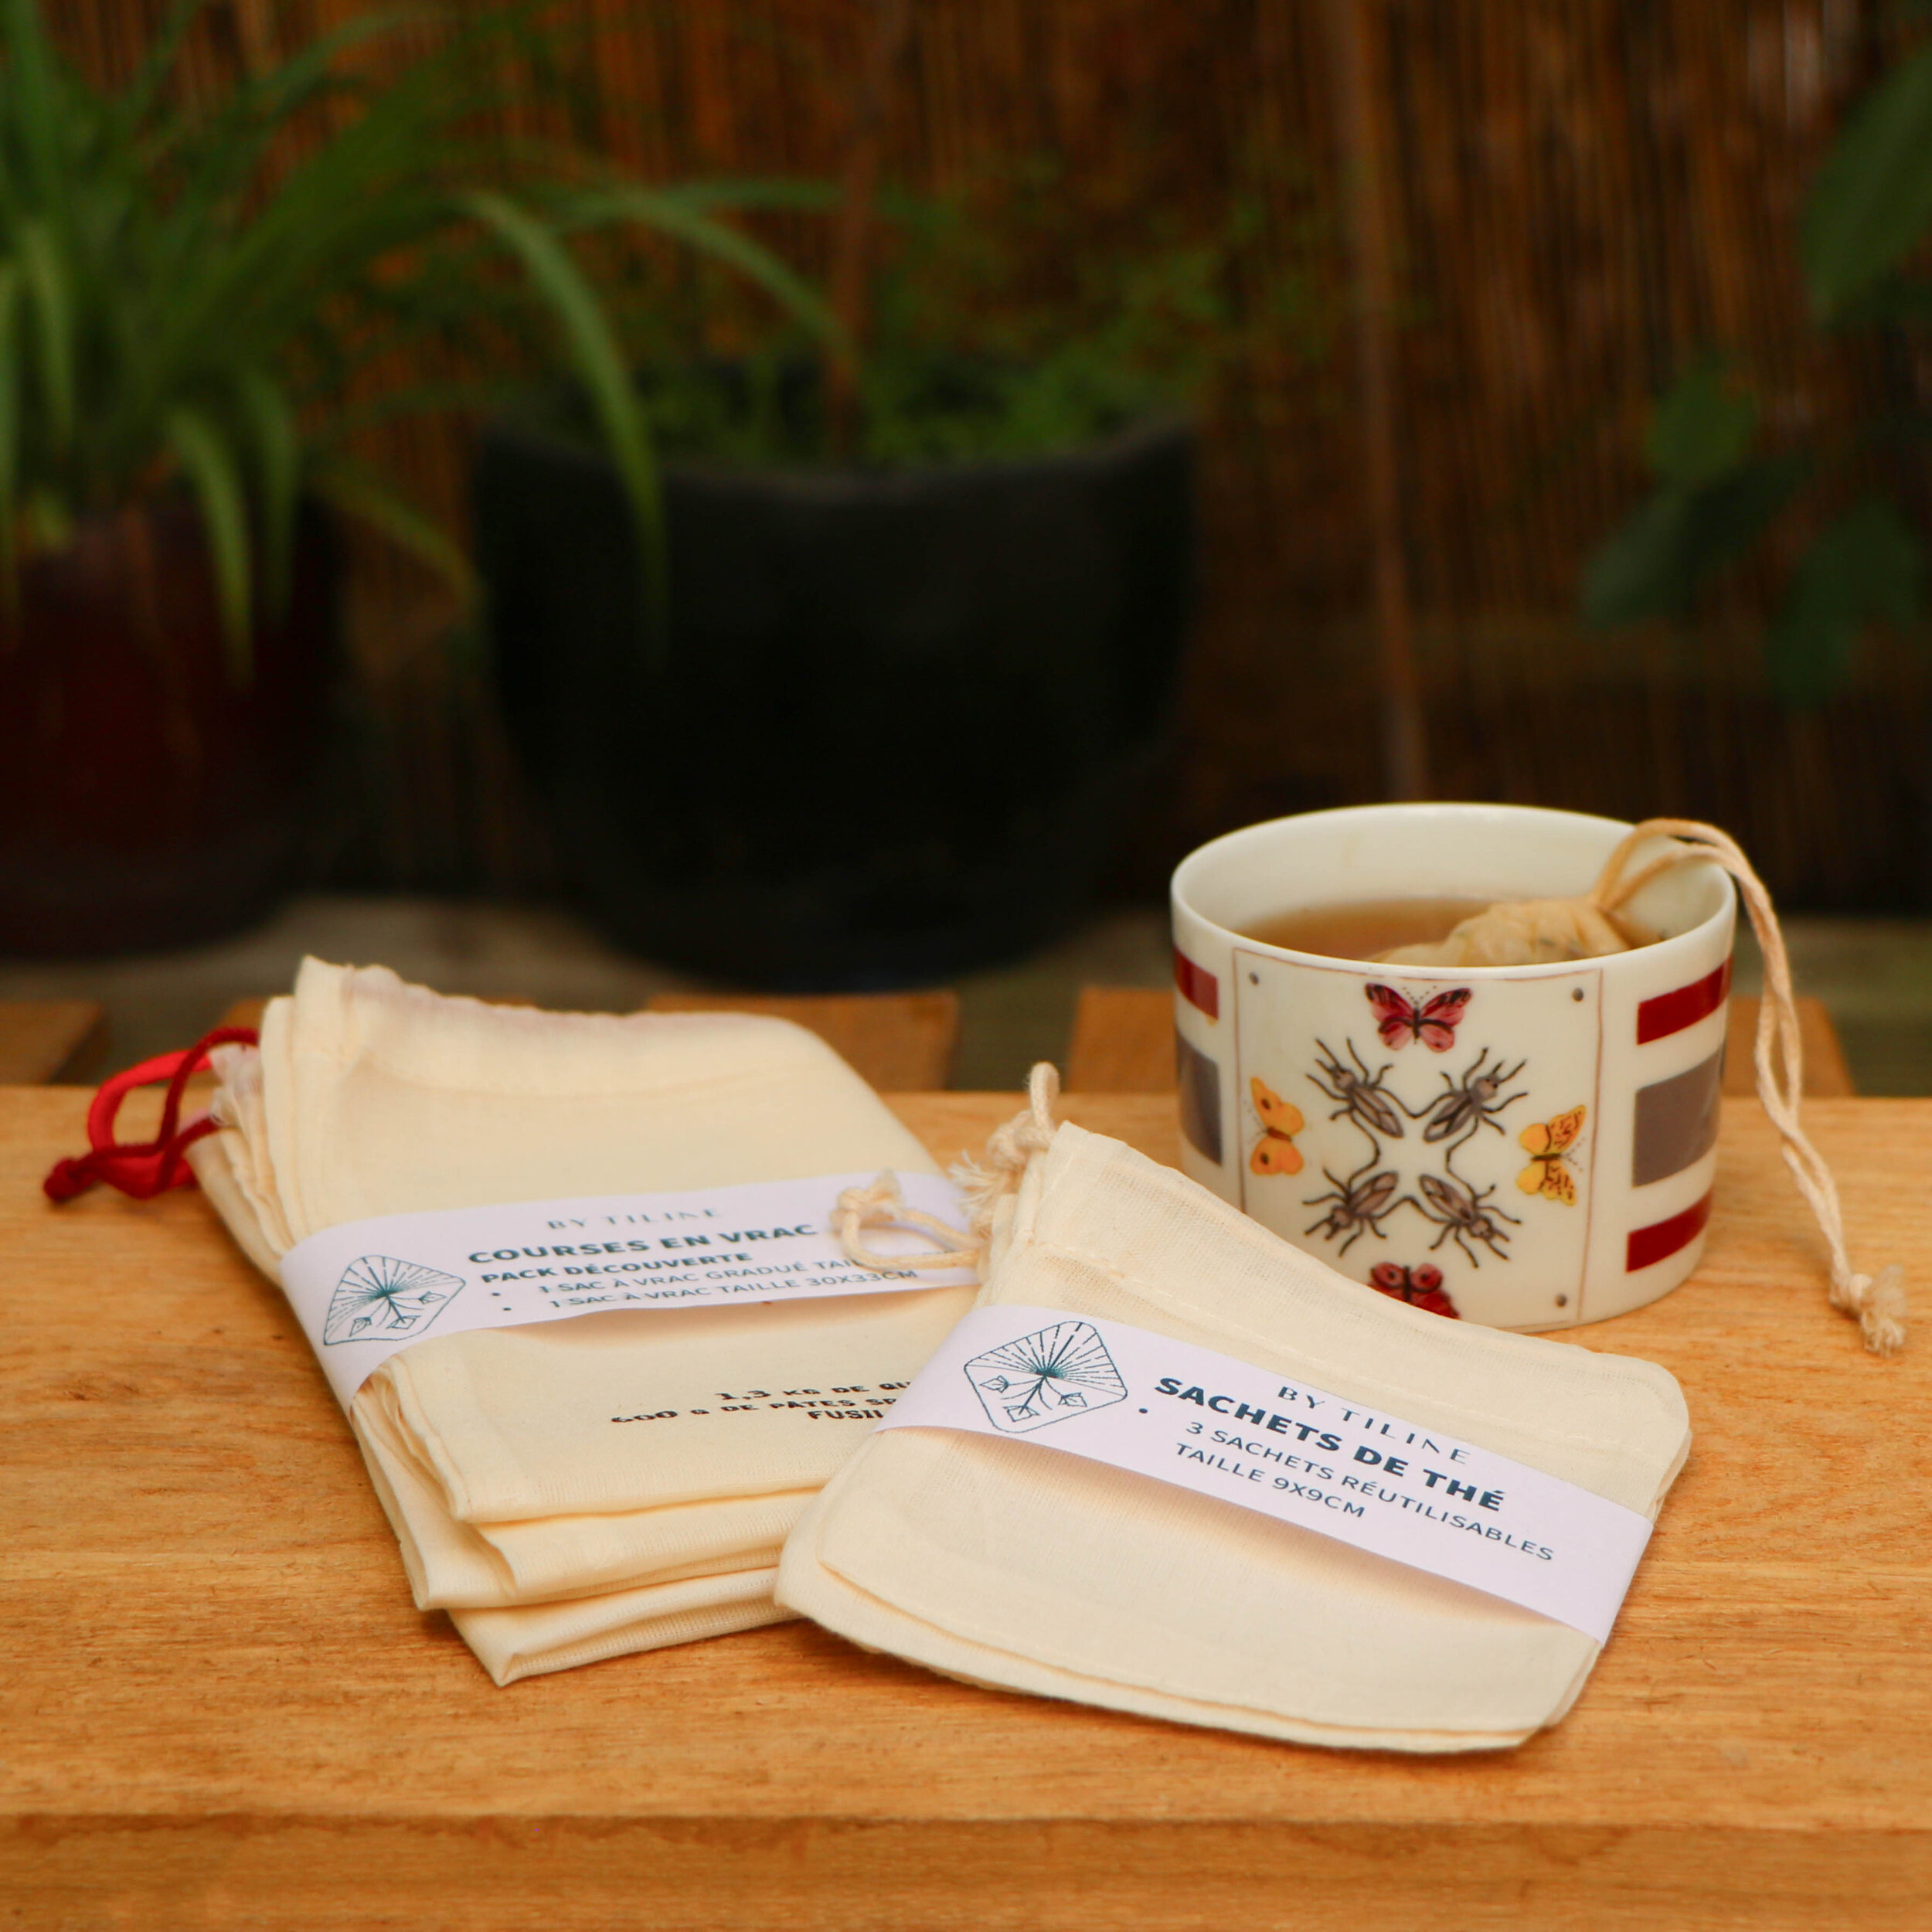 Sachet à thé en lin biologique - En lin, lavable et réutilisable